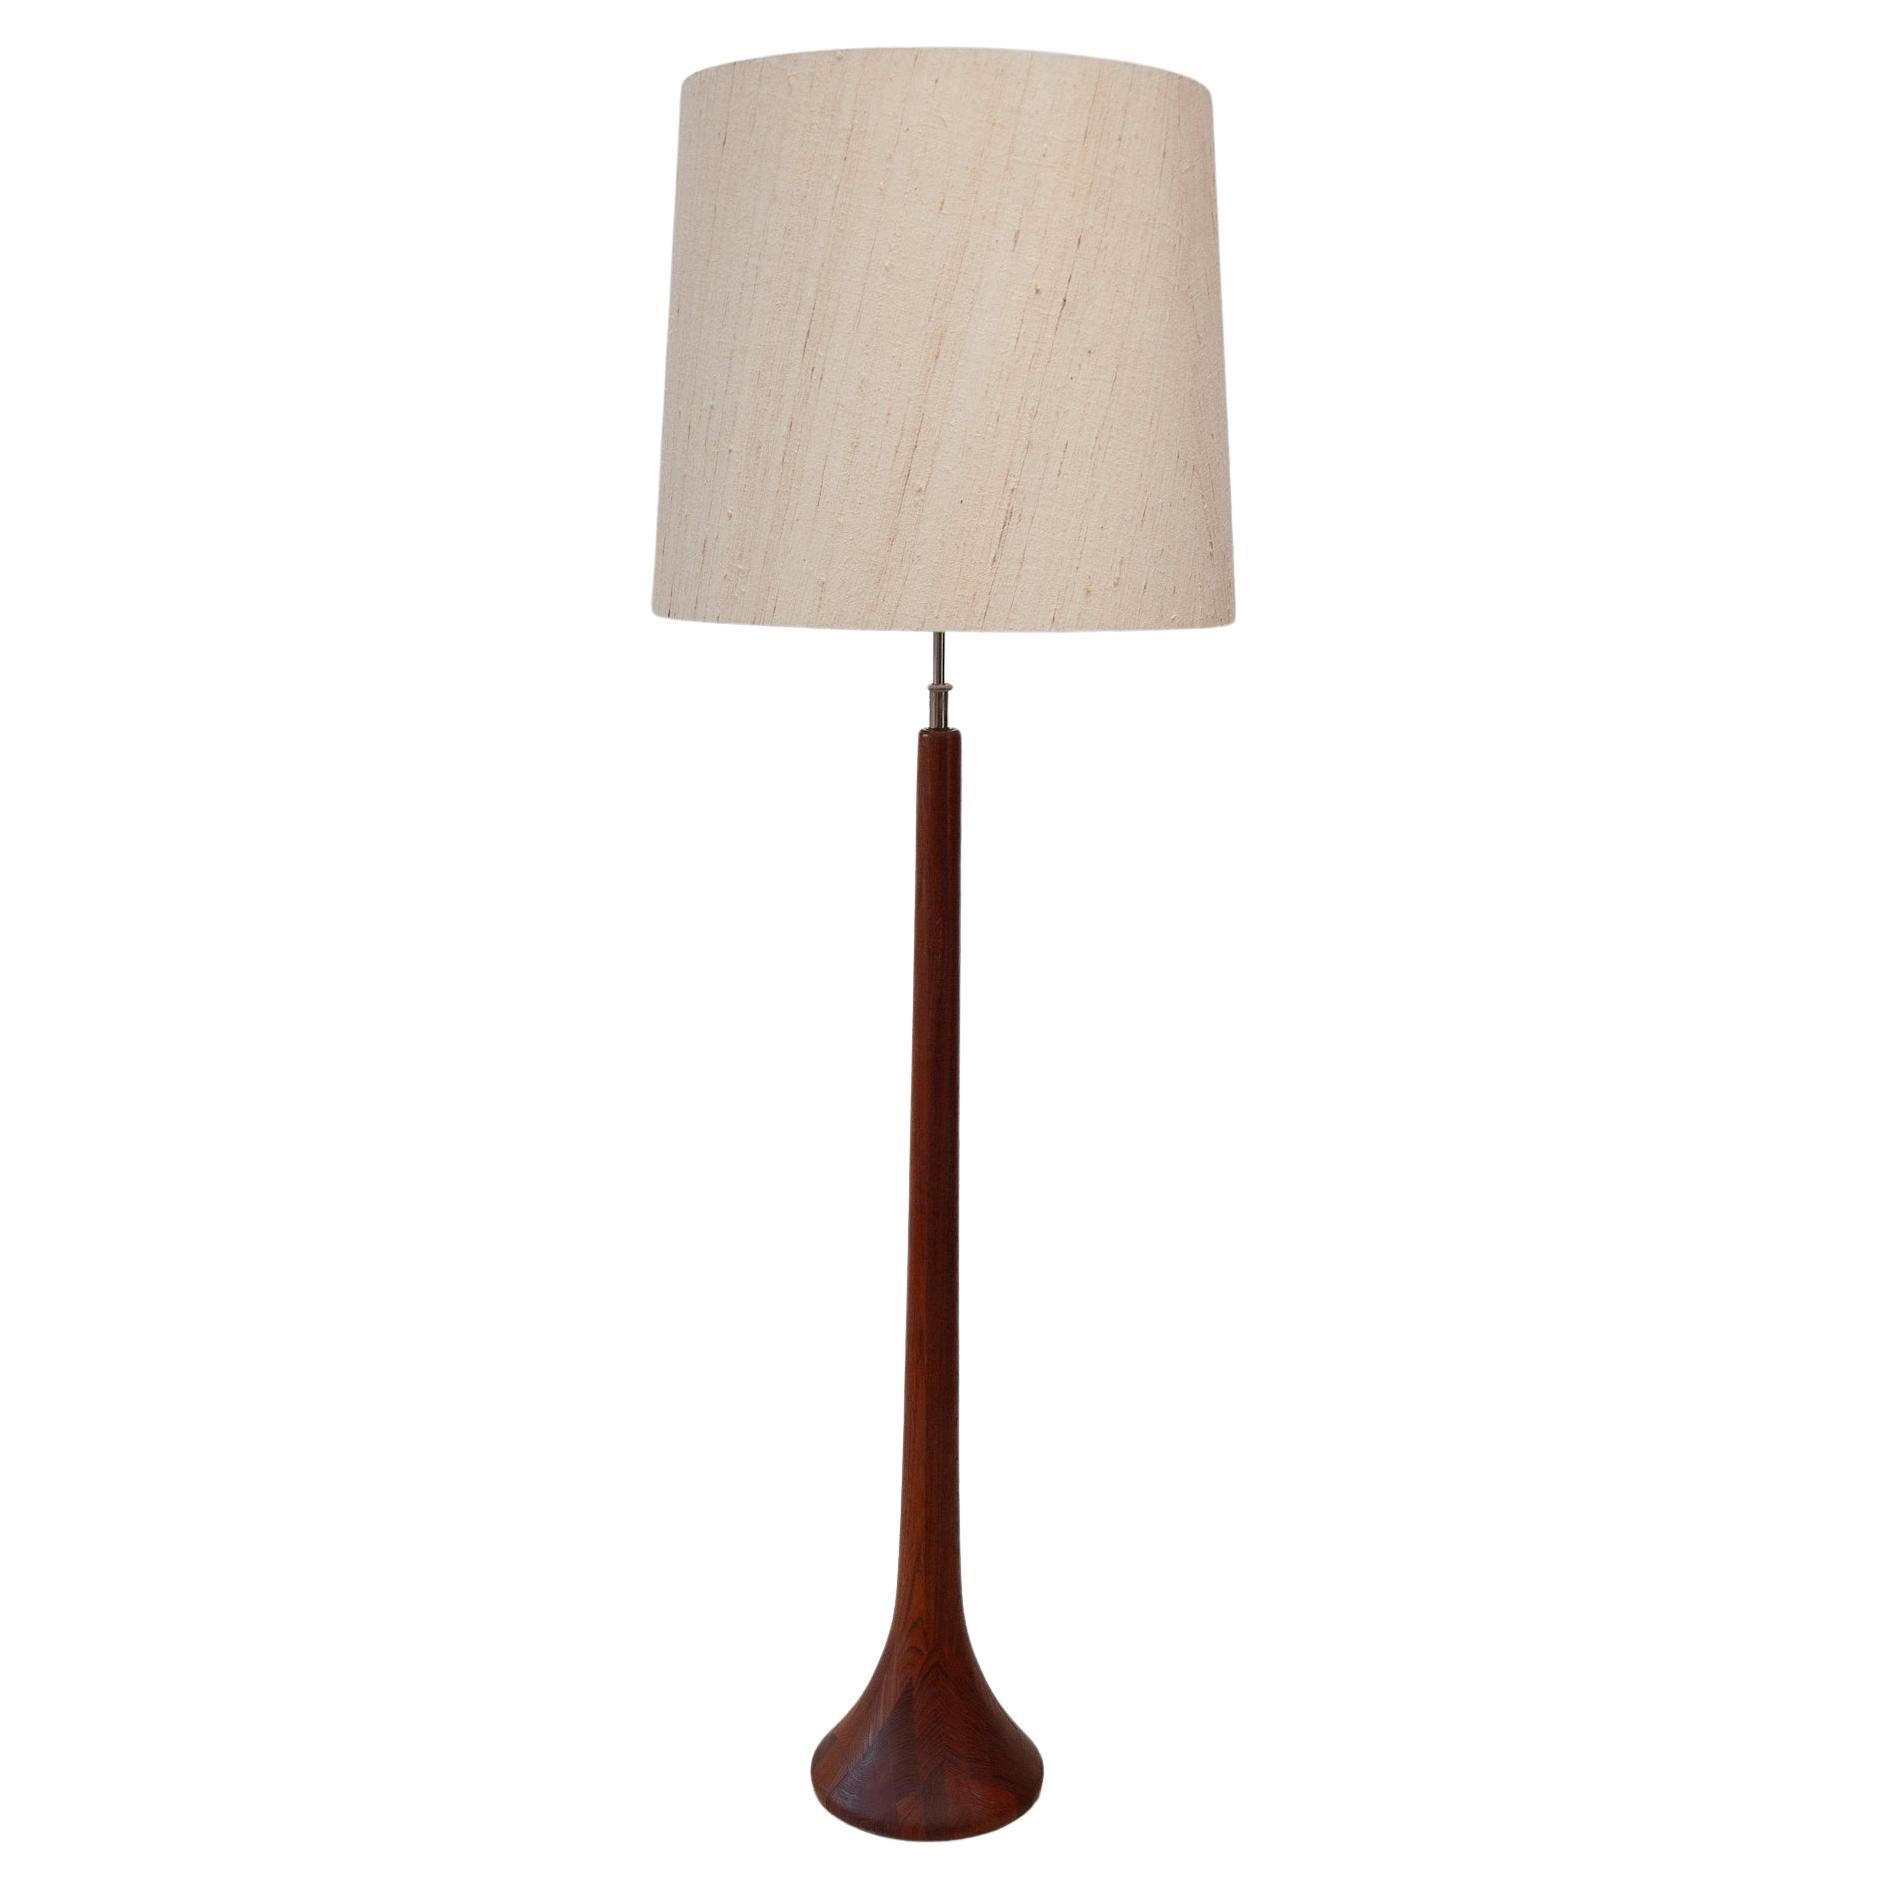 Domus Made in Denmark Solid Teak Floor lamp, 1960s For Sale